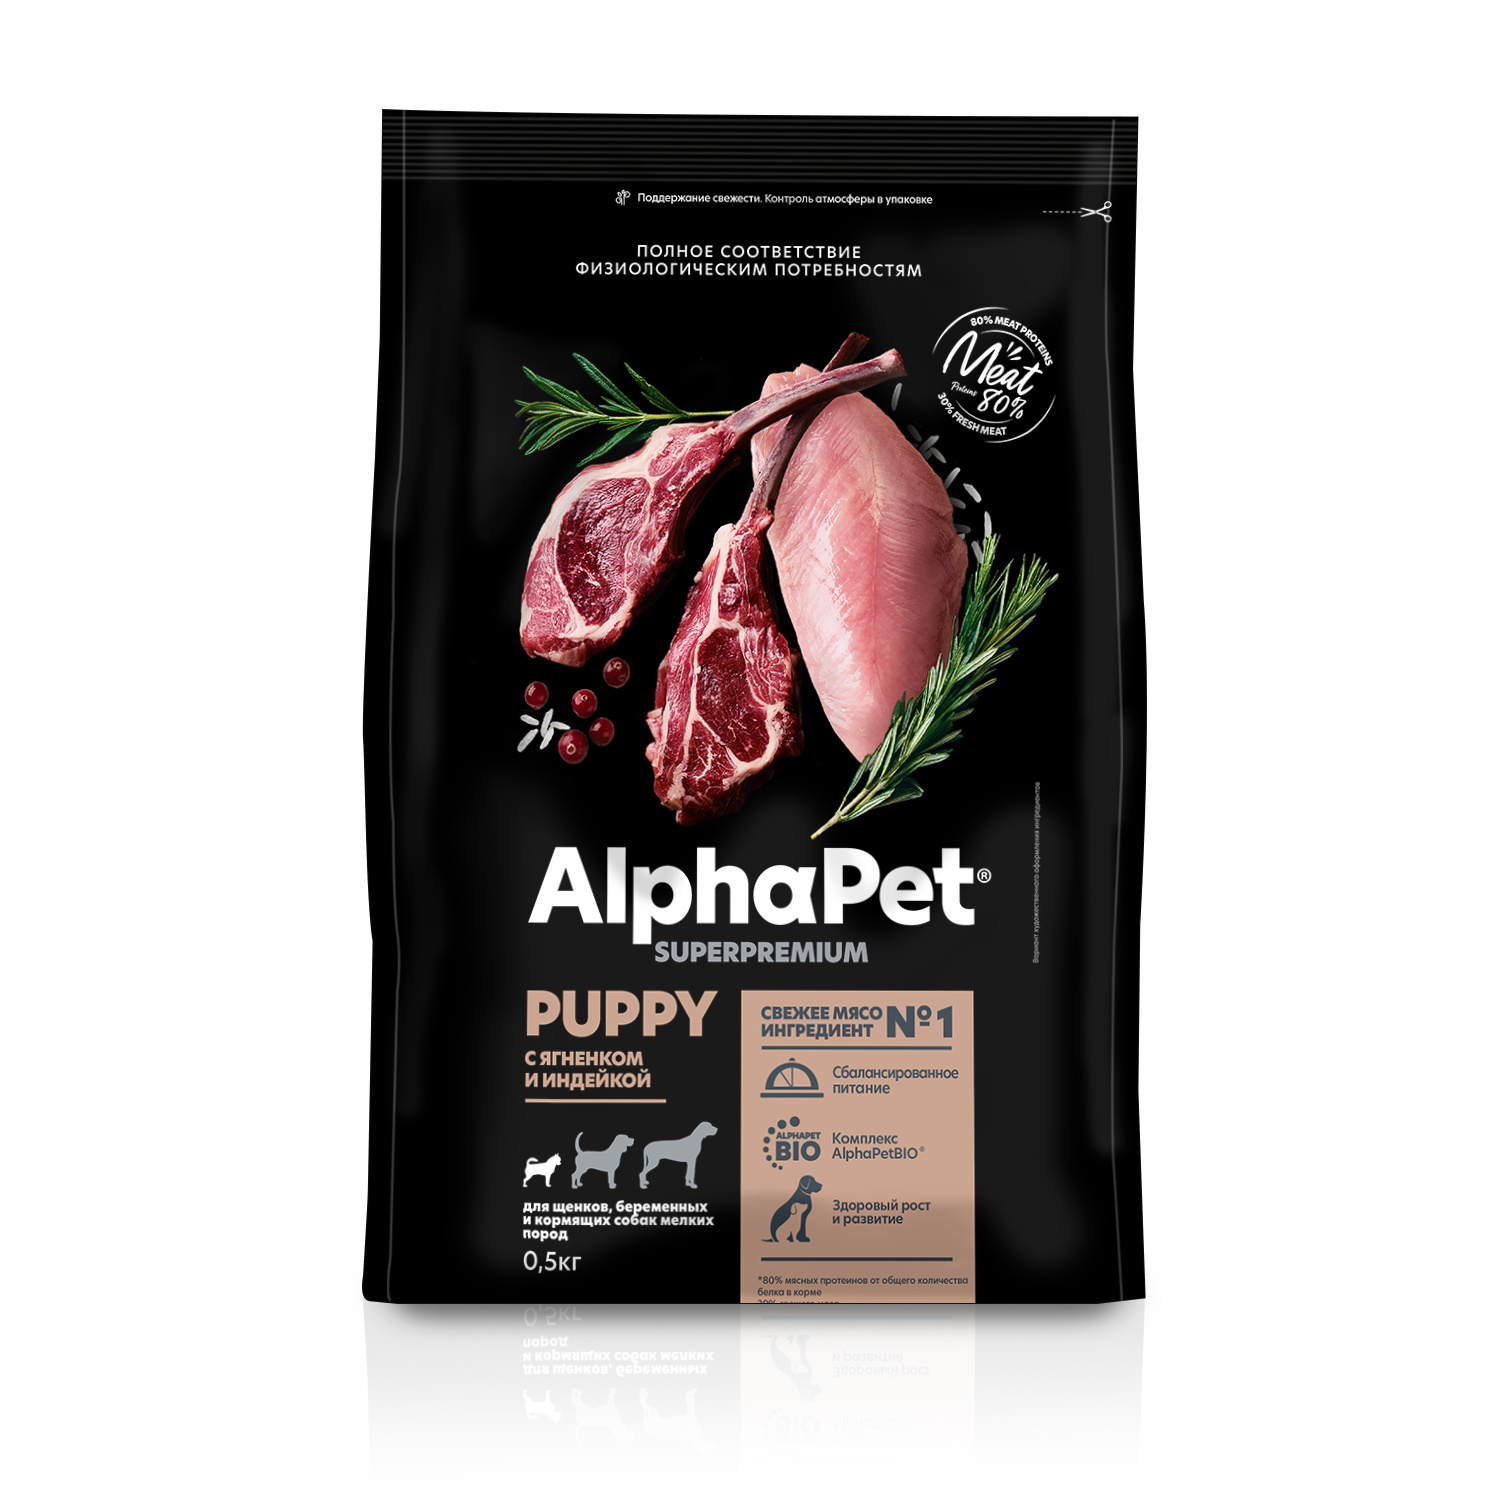 AlphaPet сухой полнорационный корм с ягненком и индейкой для щенков, беременных и кормящих собак мелких пород (1,5 кг) - фото 1